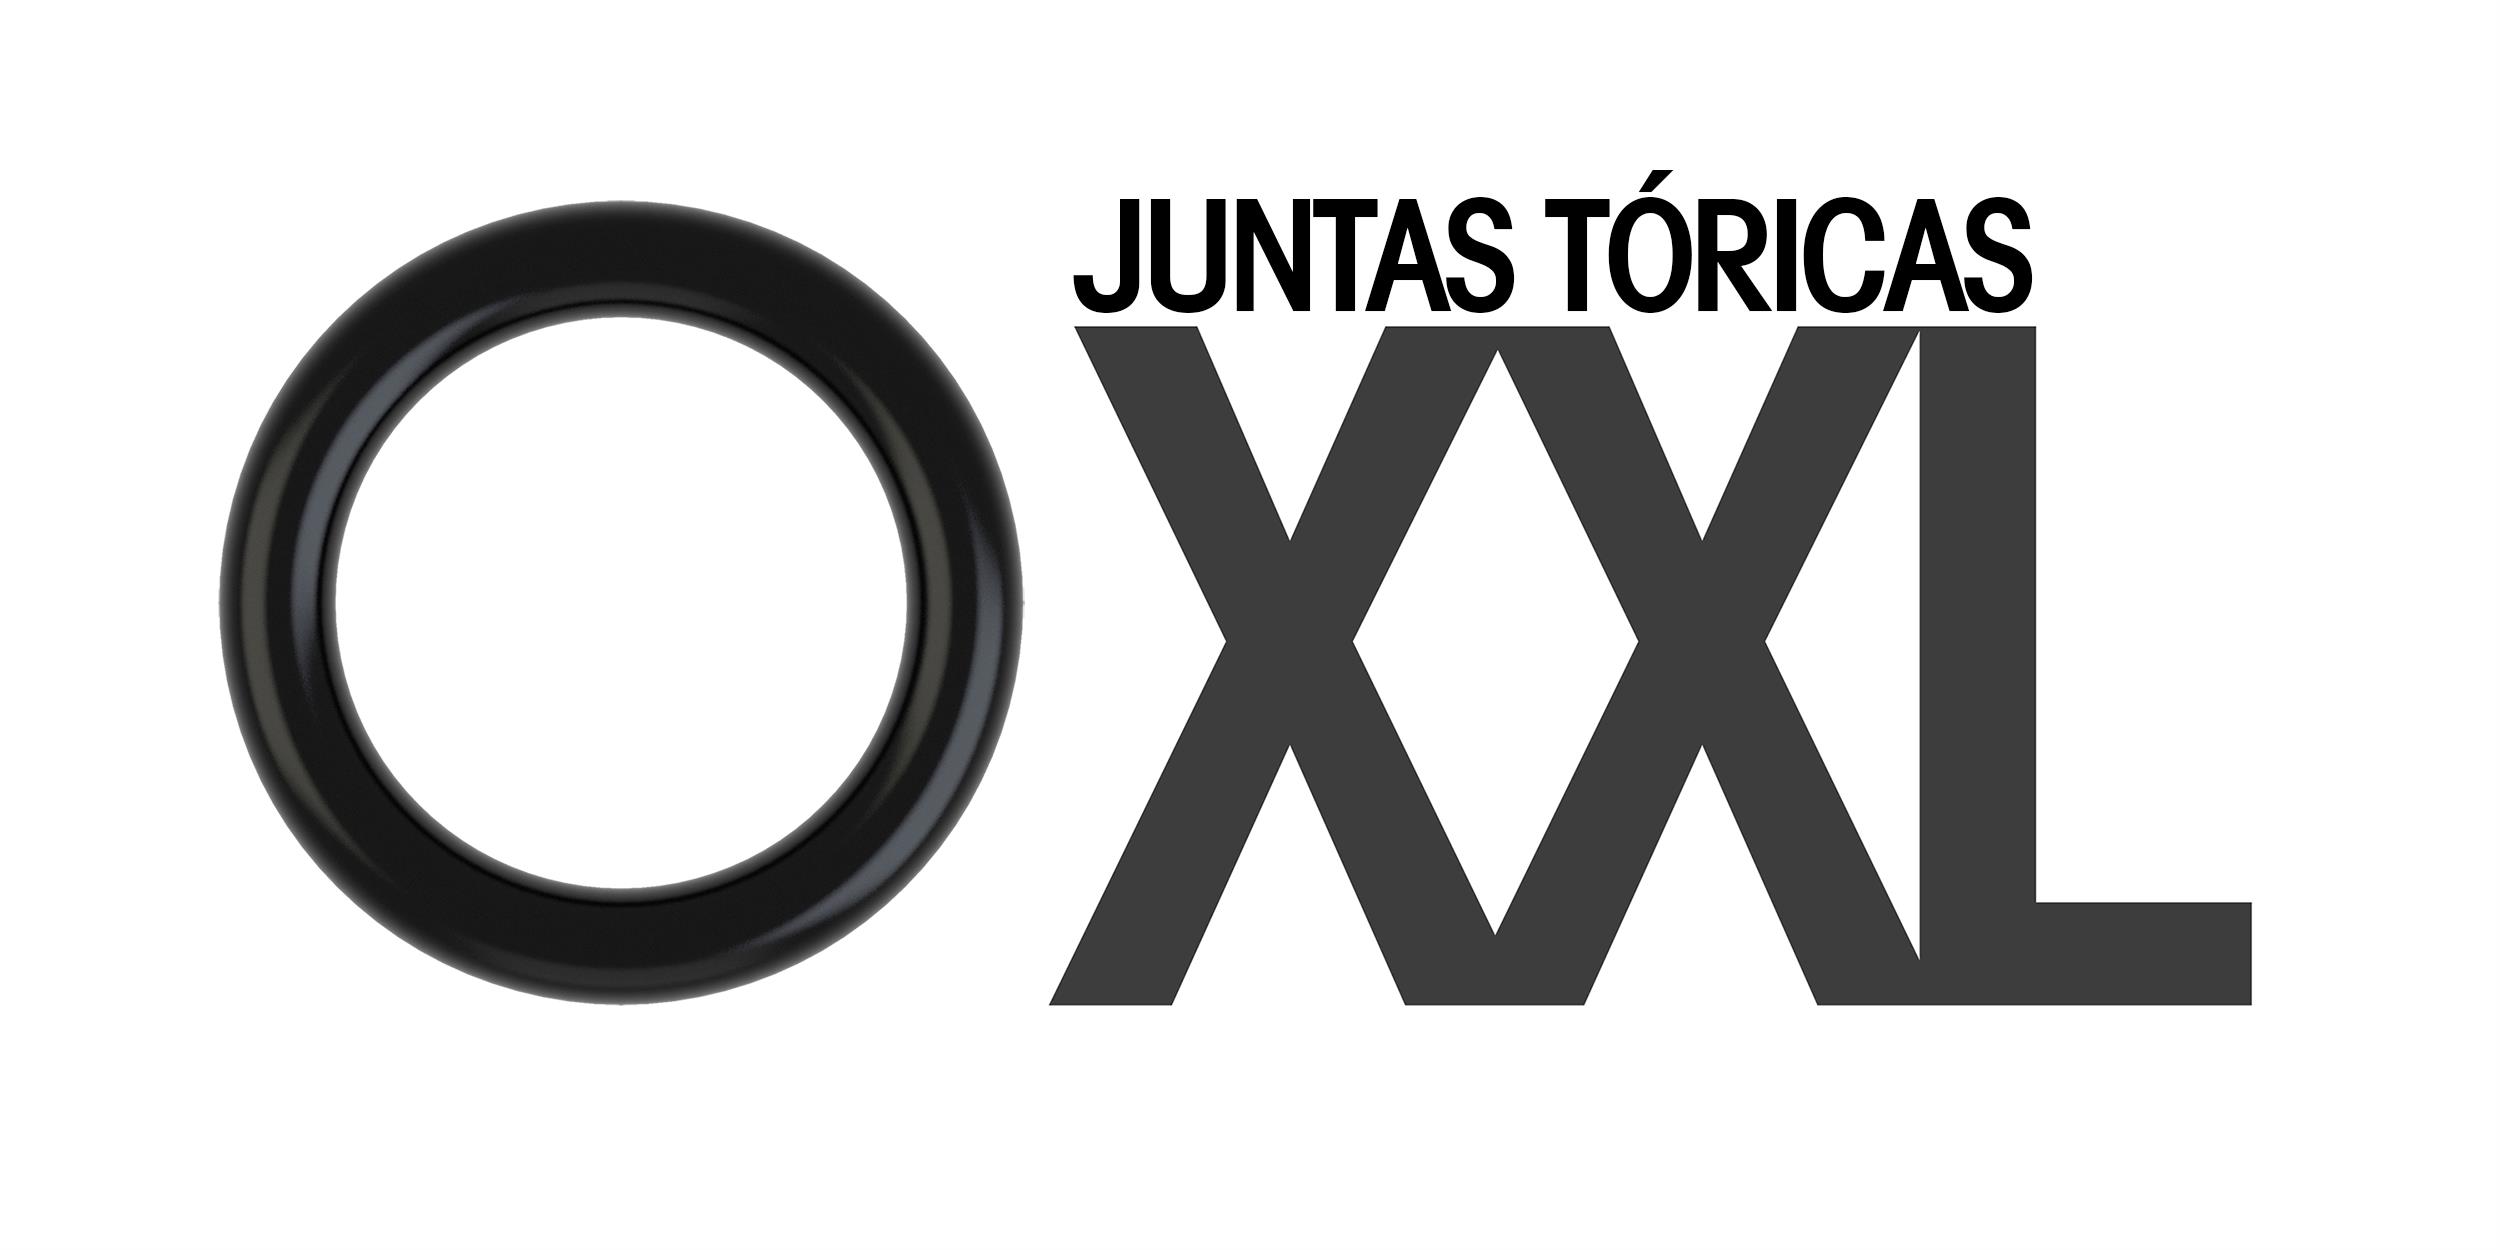 Juntas Tóricas XXL…